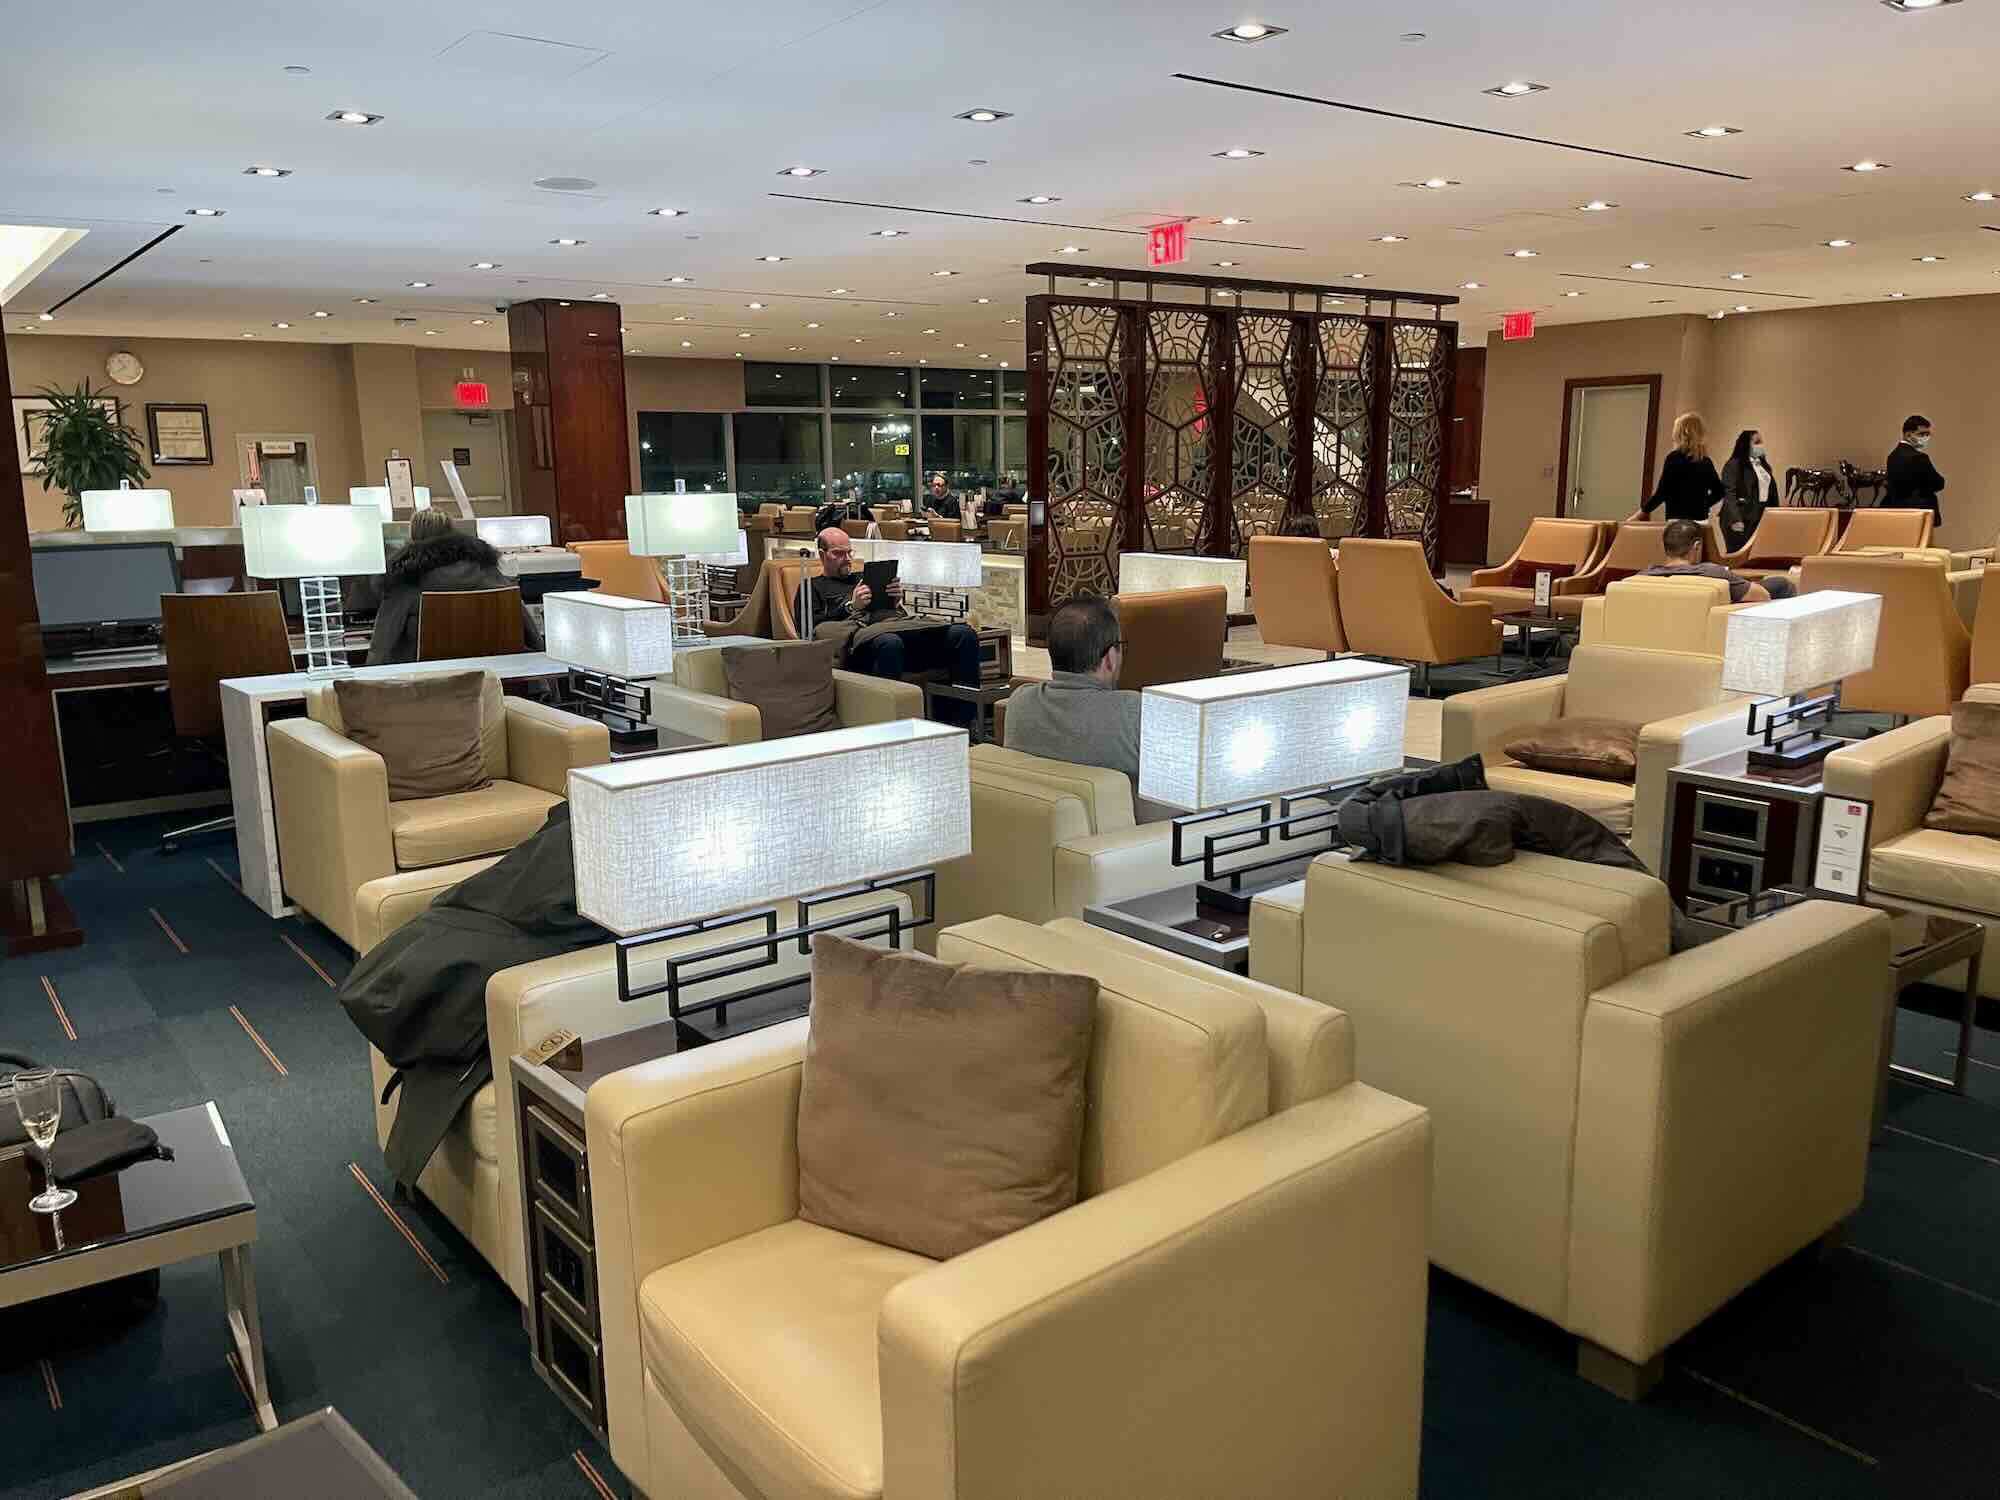 Recensione lounge Emirates all’aeroporto di New York JFK